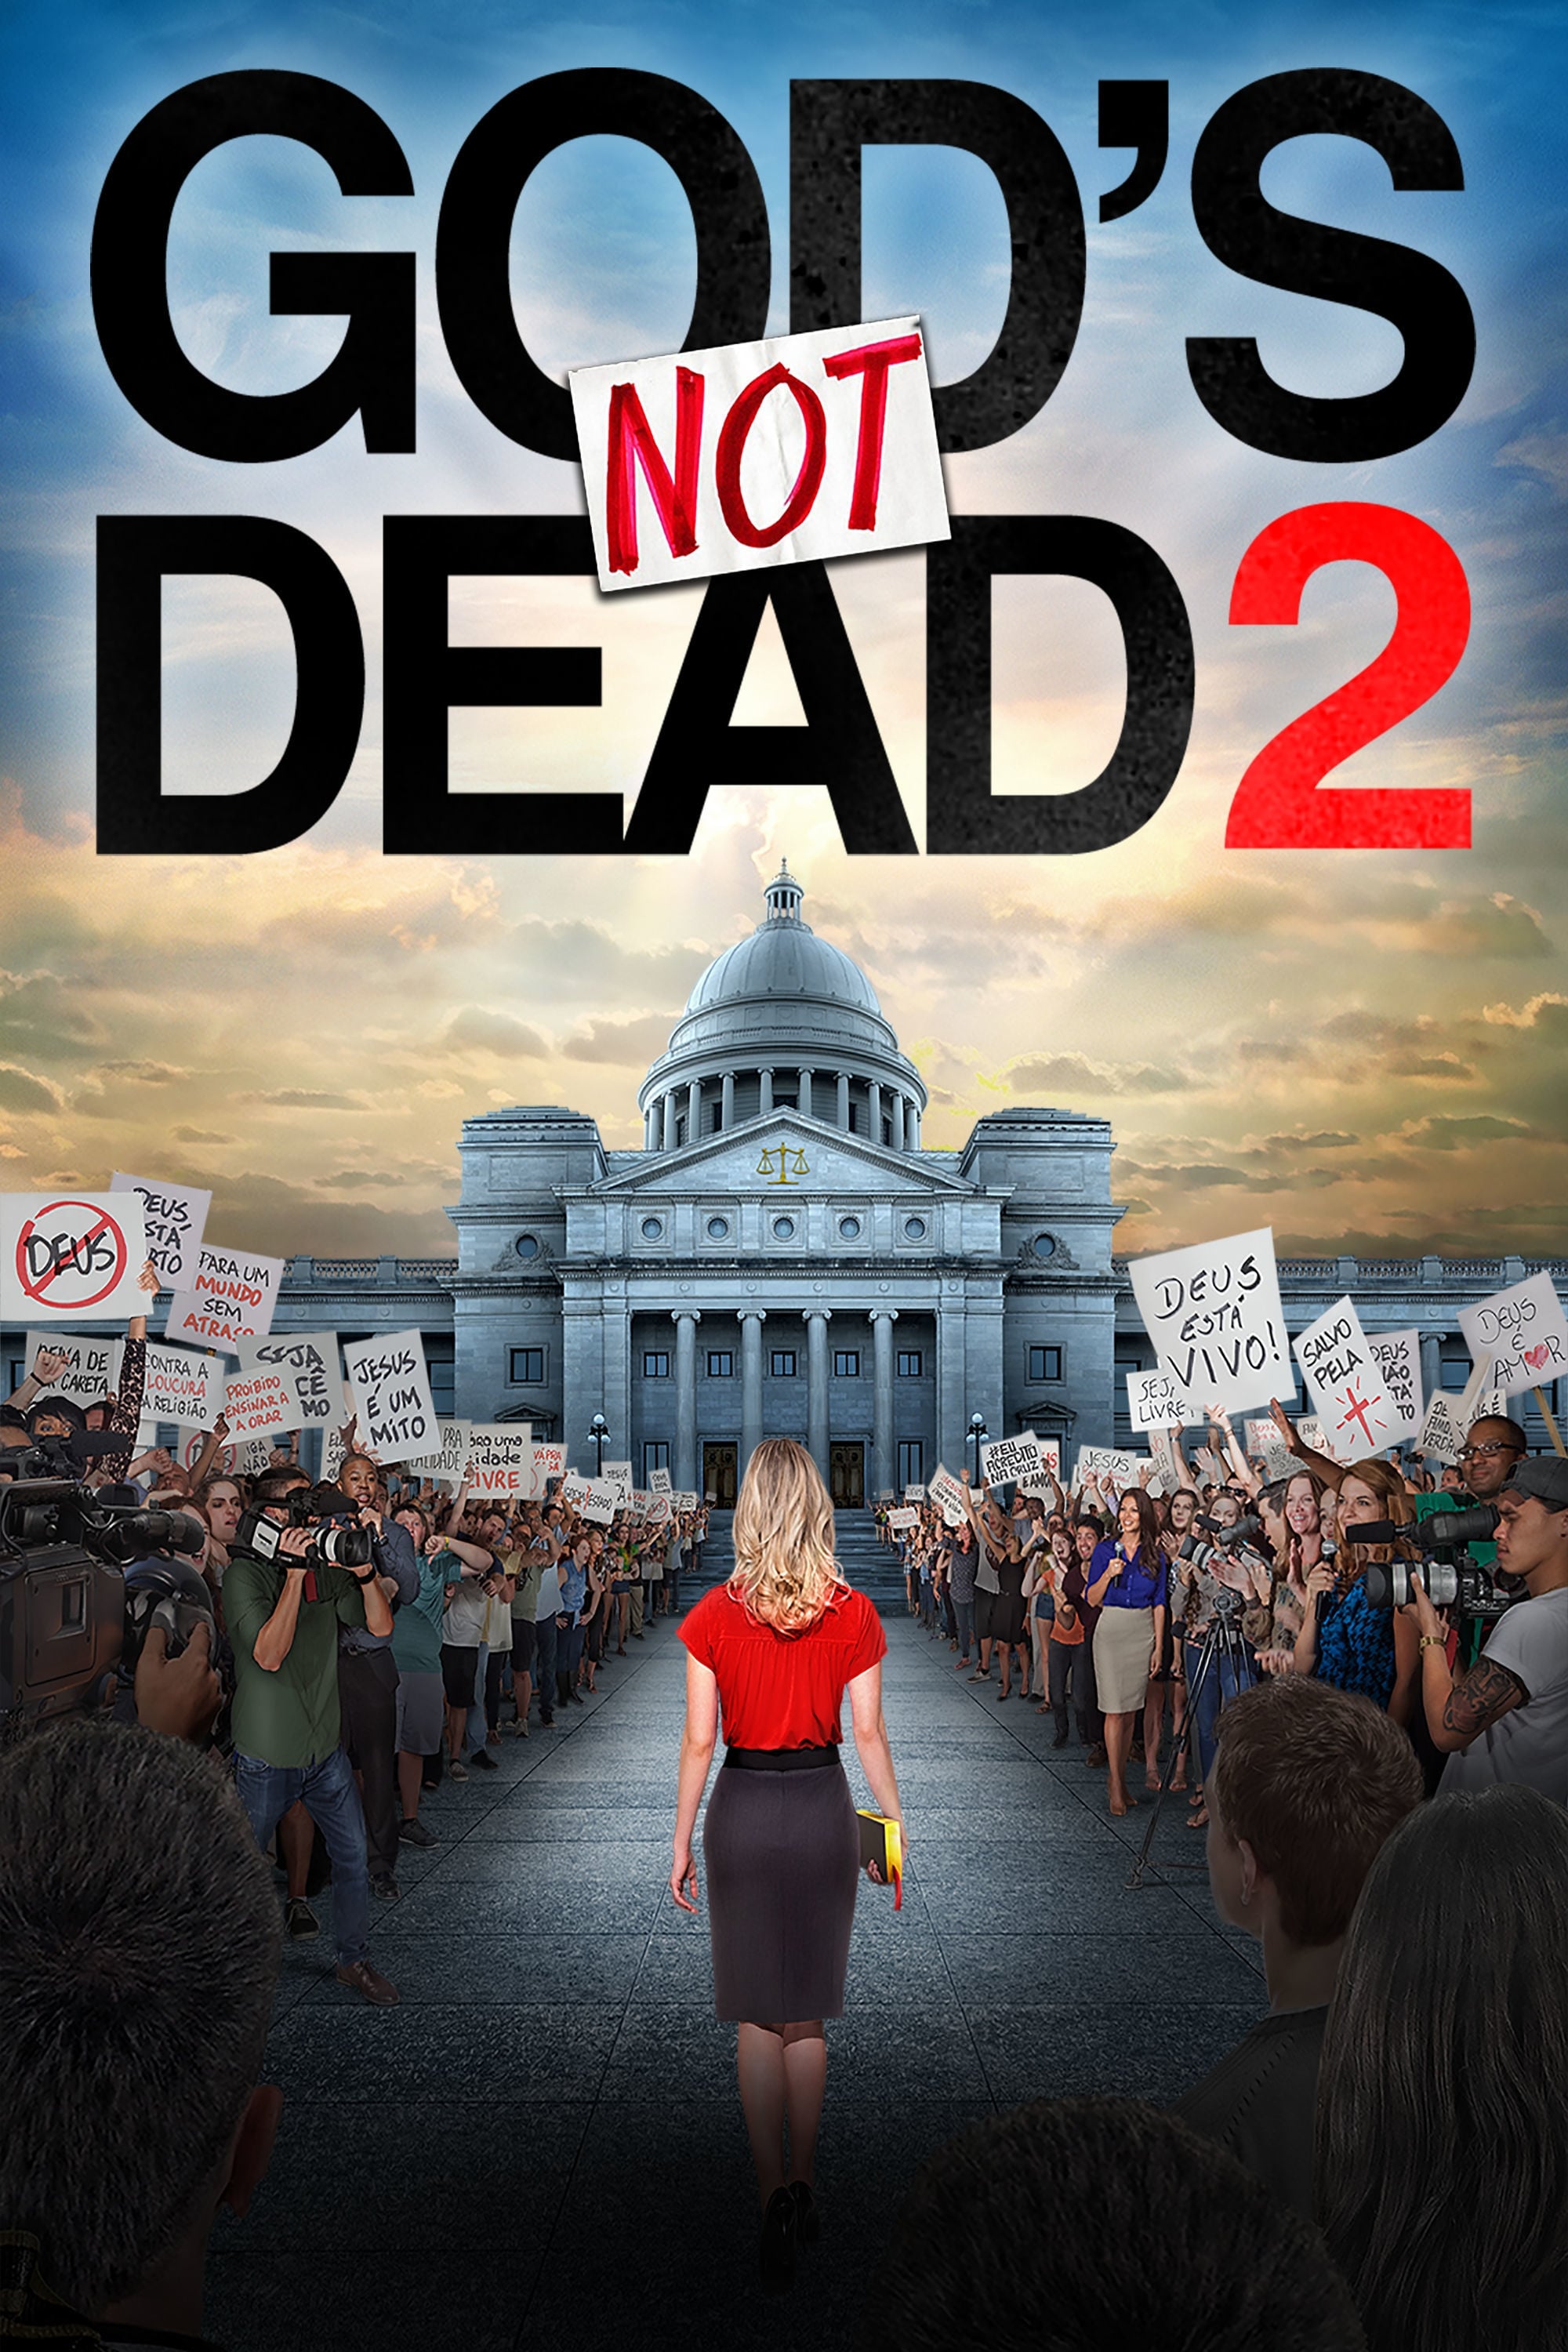 God's not dead dvd release date